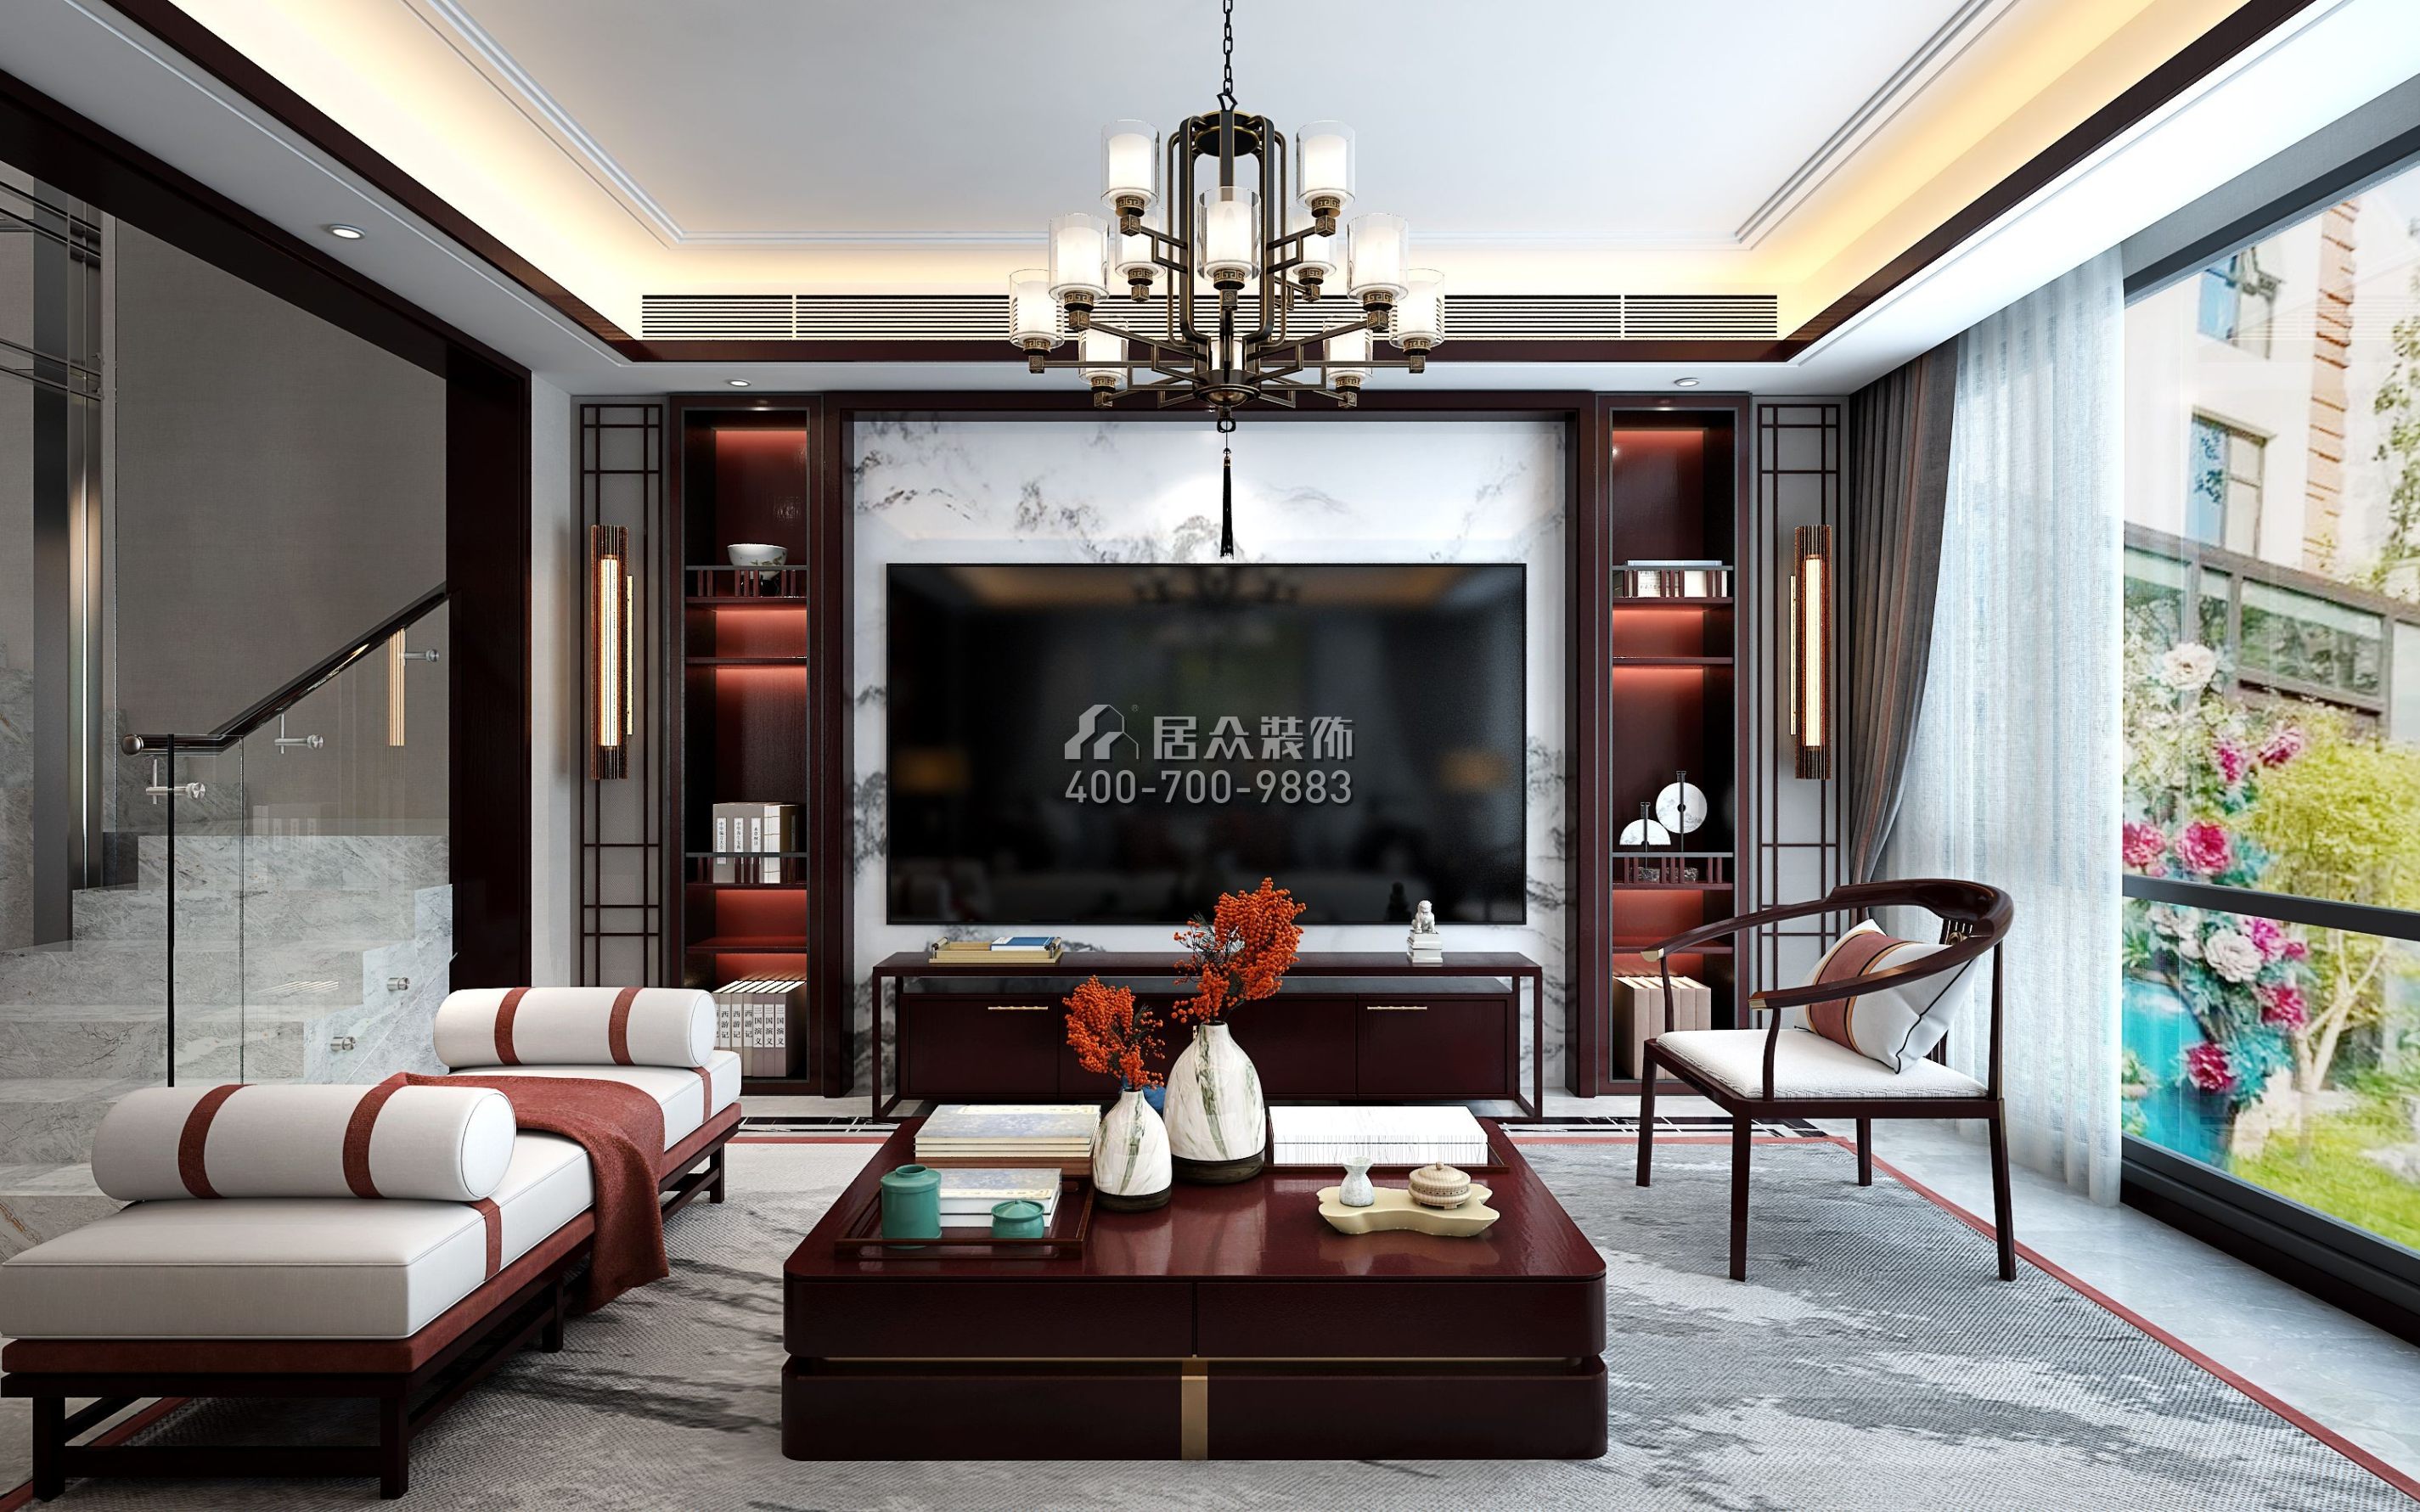 天鹅湾3期450平方米中式风格别墅户型客厅装修效果图